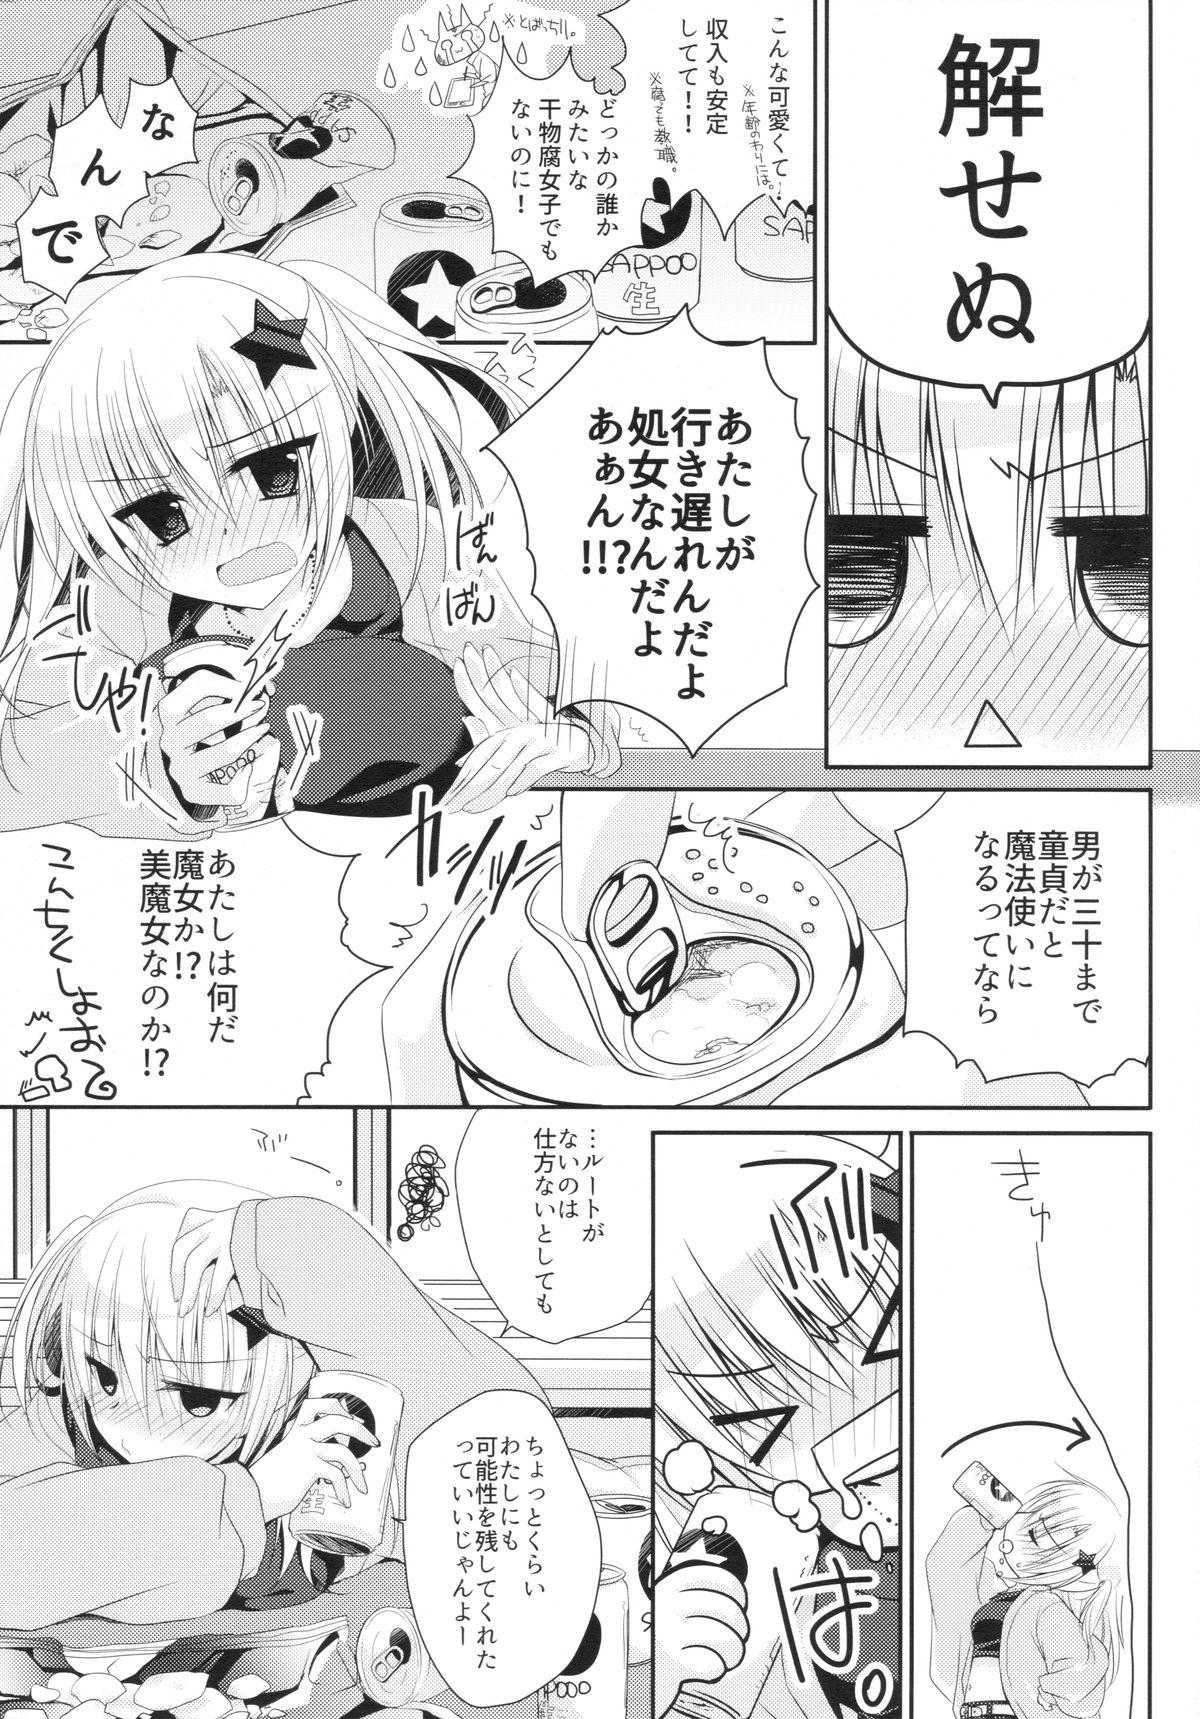 Bangbros Yuka Sensei 29-sai Ecchi - Page 4